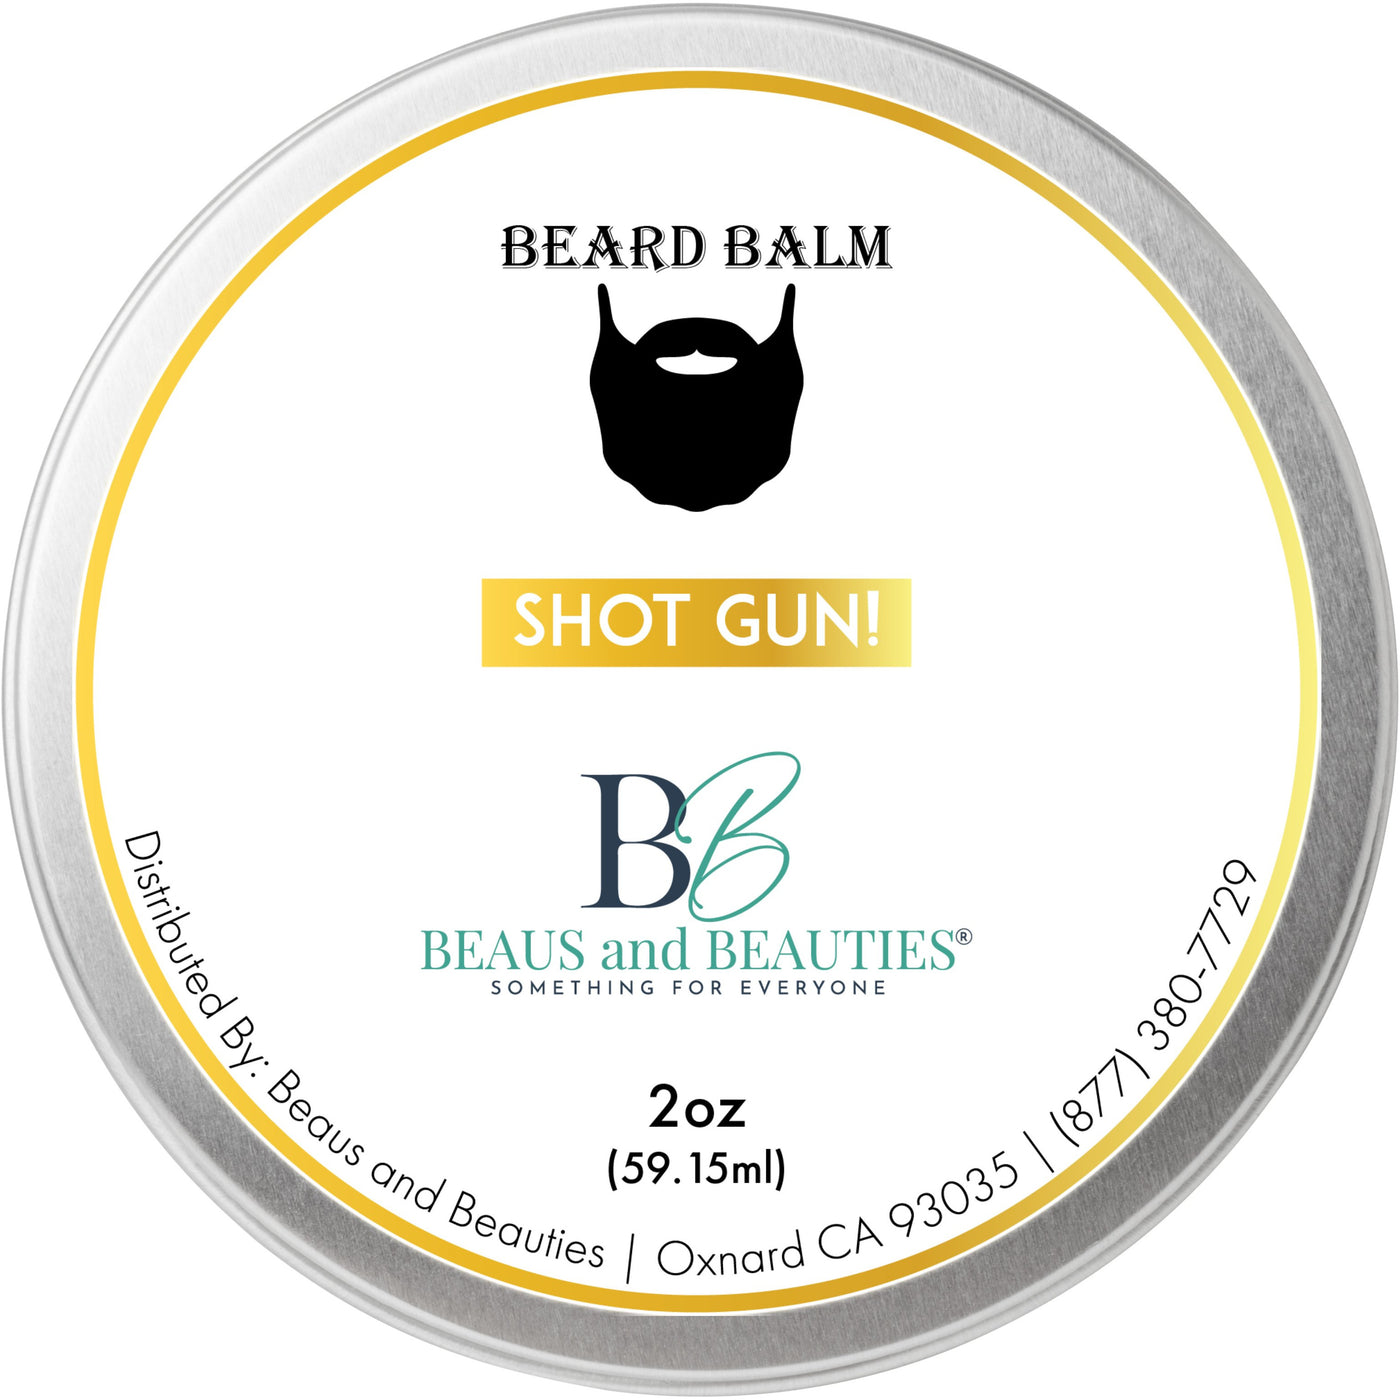 2 oz Beard Balm Shot Gun!